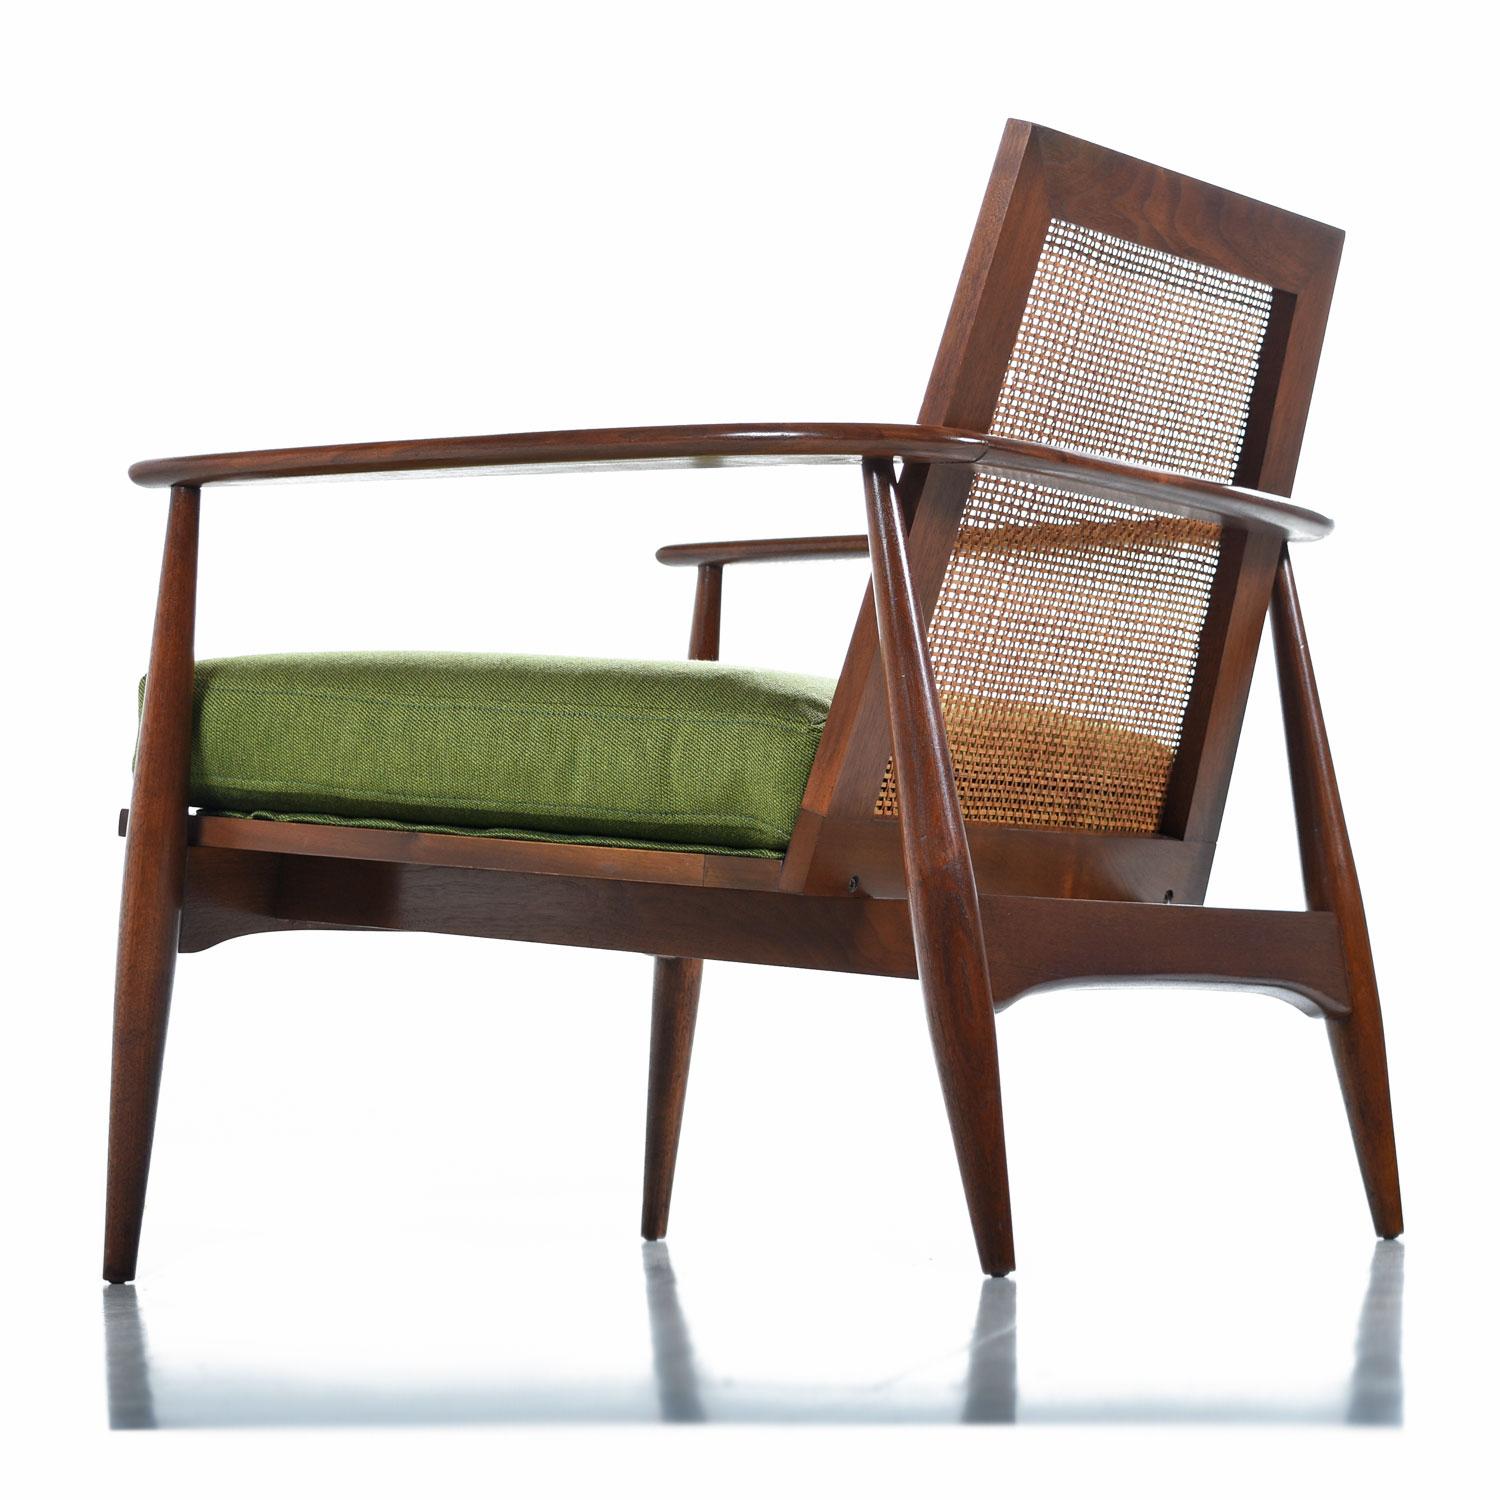 Mid-20th Century Midcentury Lawrence Peabody Walnut and Cane Horseshoe Bow Back Lounge Chairs